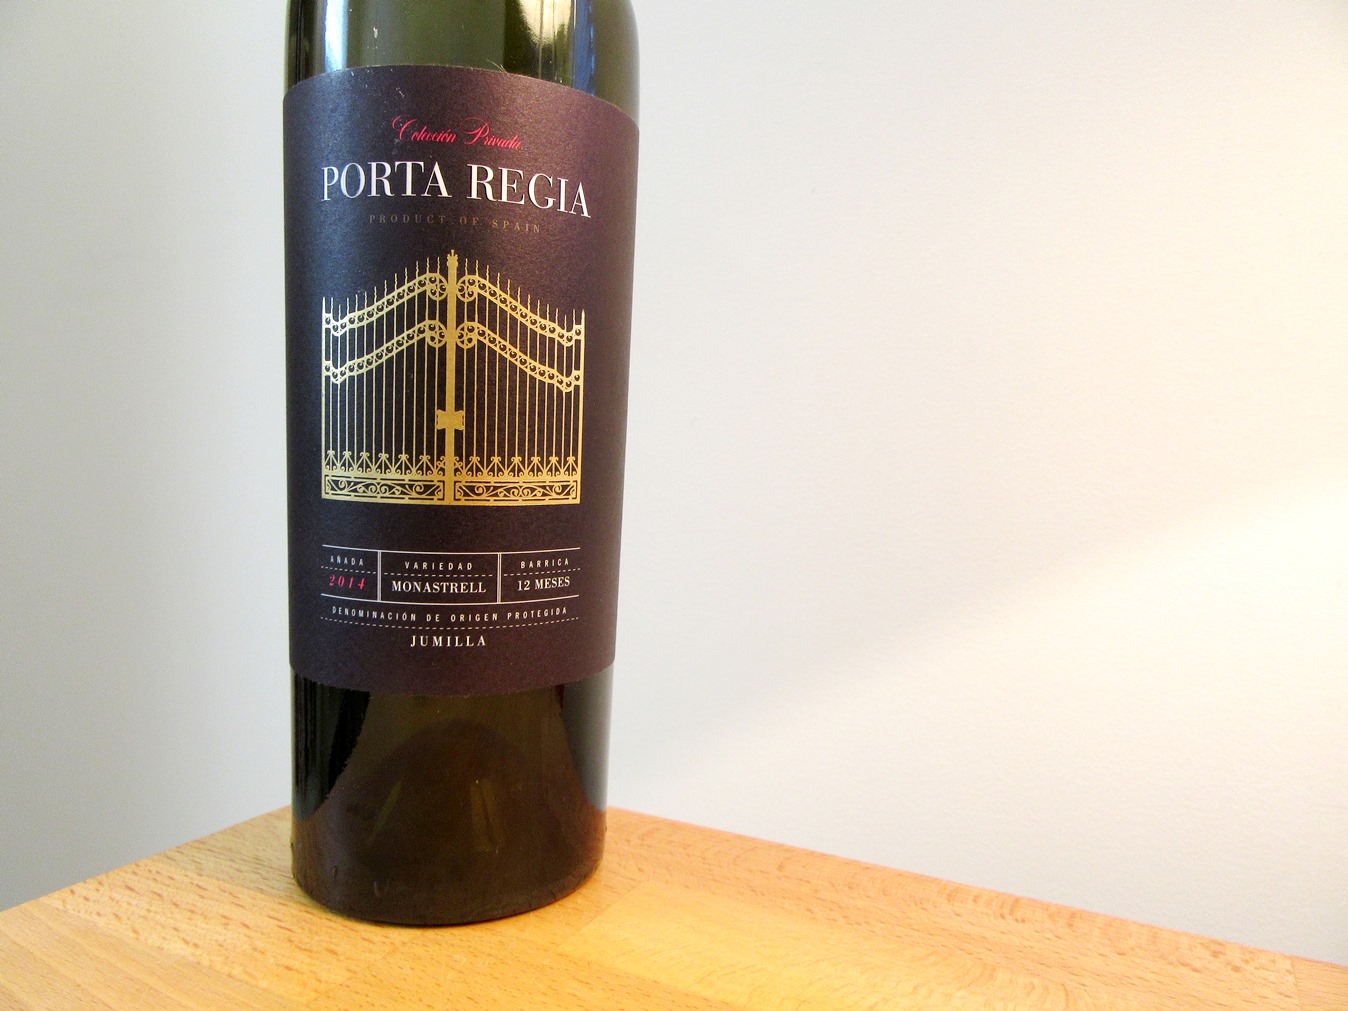 Sierra Norte, Collección Privada Porta Regia, Monastrell 2014, Jumilla, Spain, Wine Casual